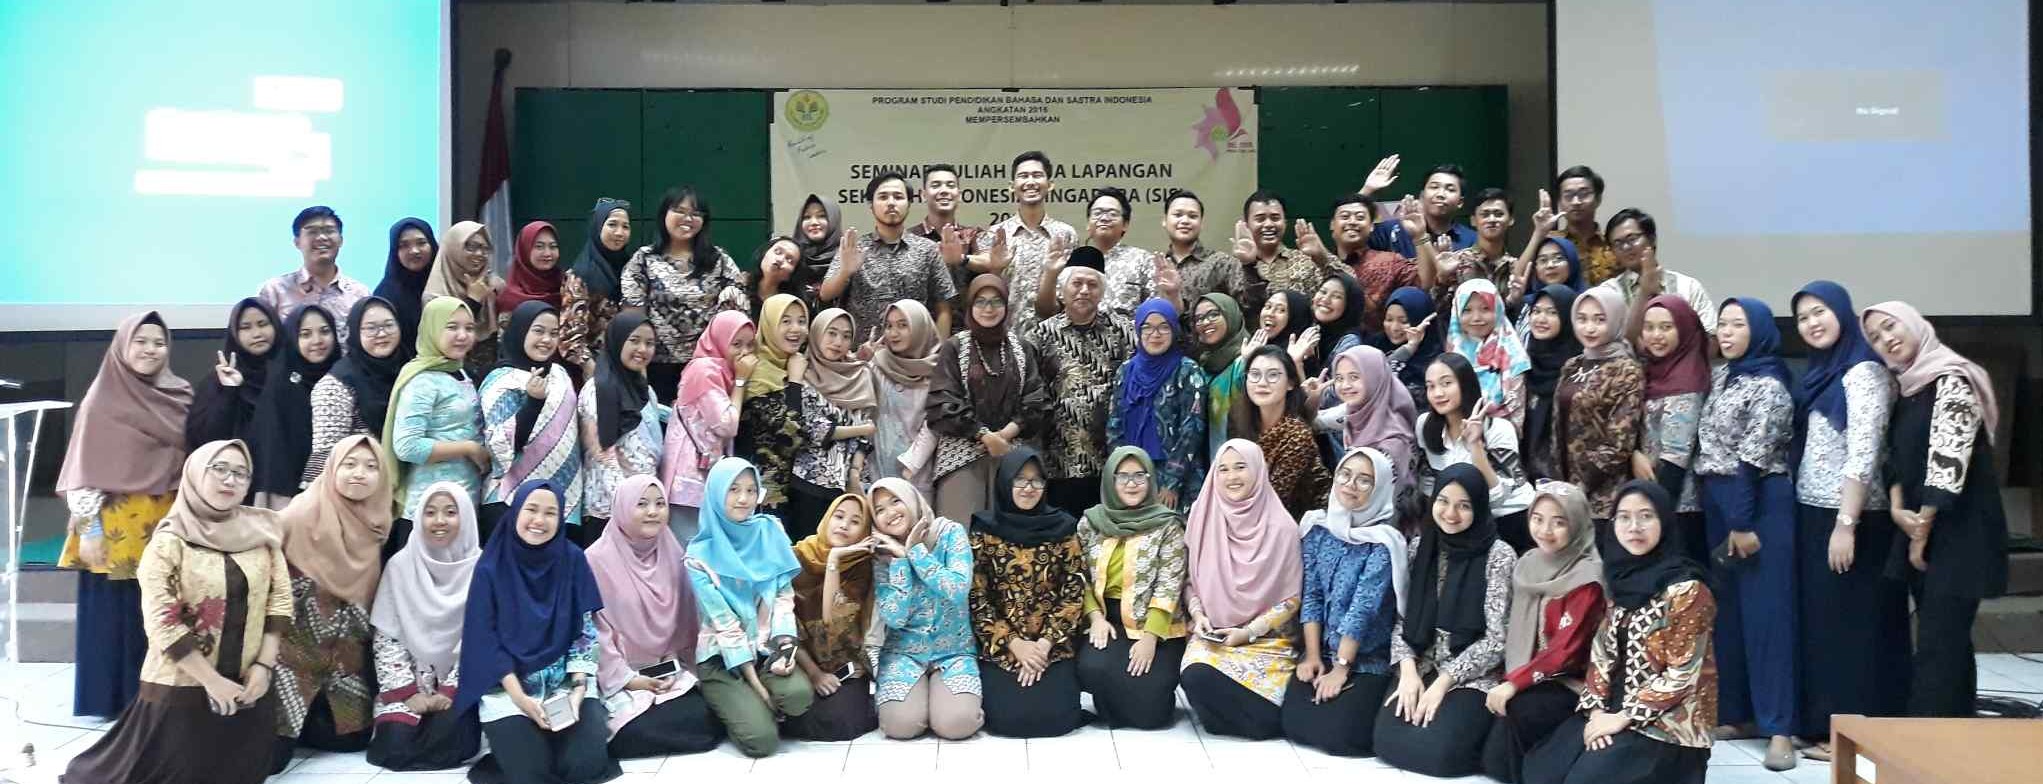 Seminar Kuliah Kerja Lapangan Sekolah Indonesia Singapura